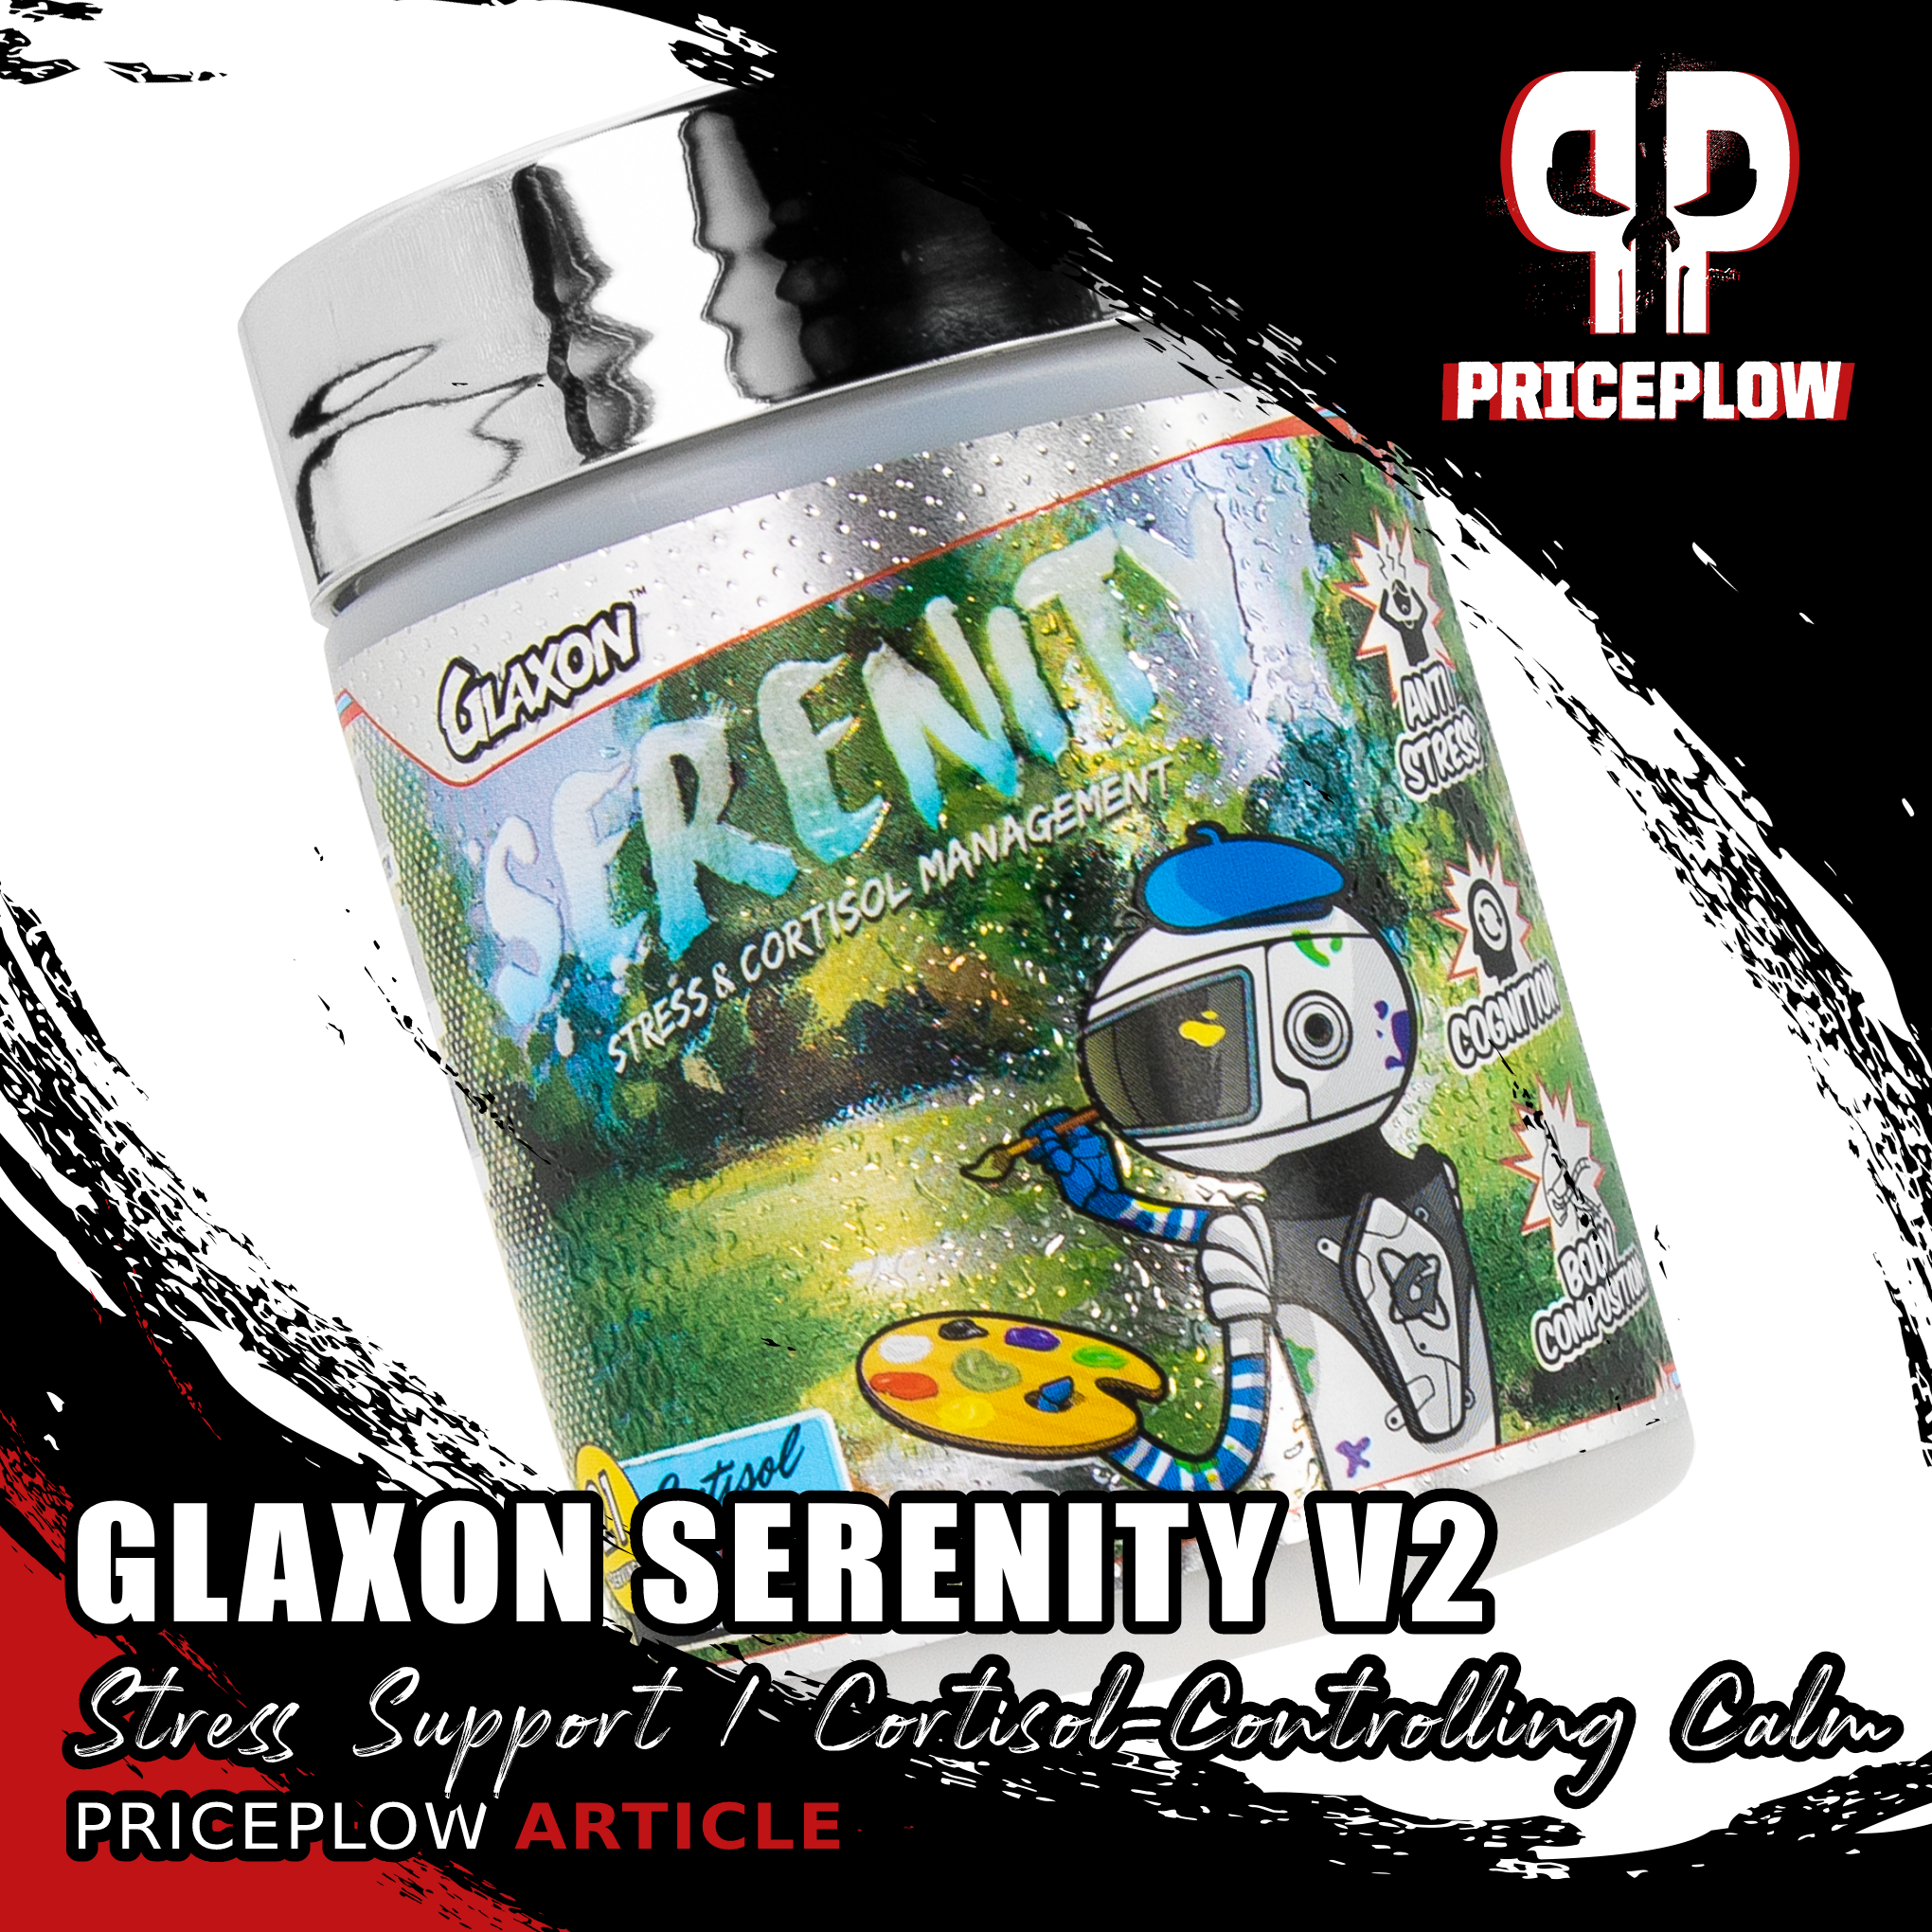 Glaxon Serenity V2